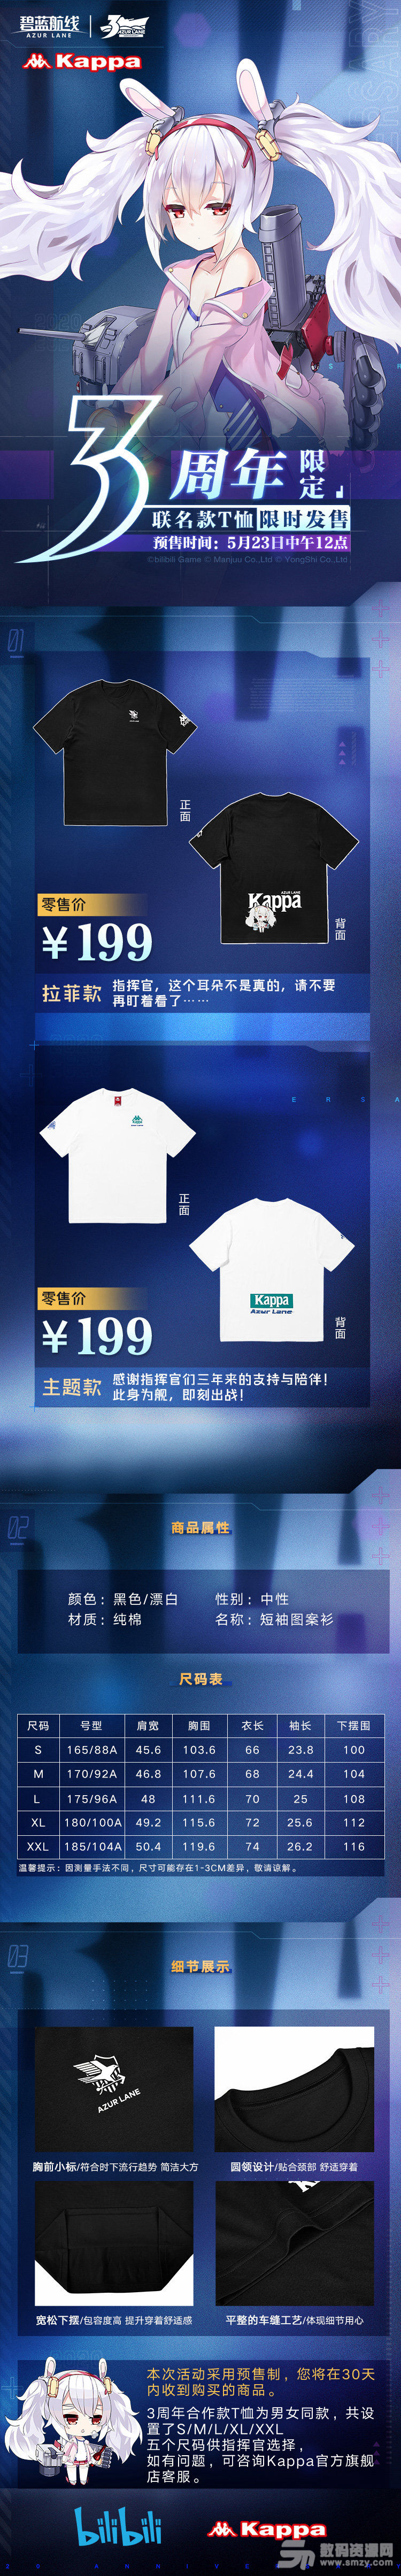 【碧蓝航线与Kappa三周年合作活动】详解 联名T恤售价与尺码一览